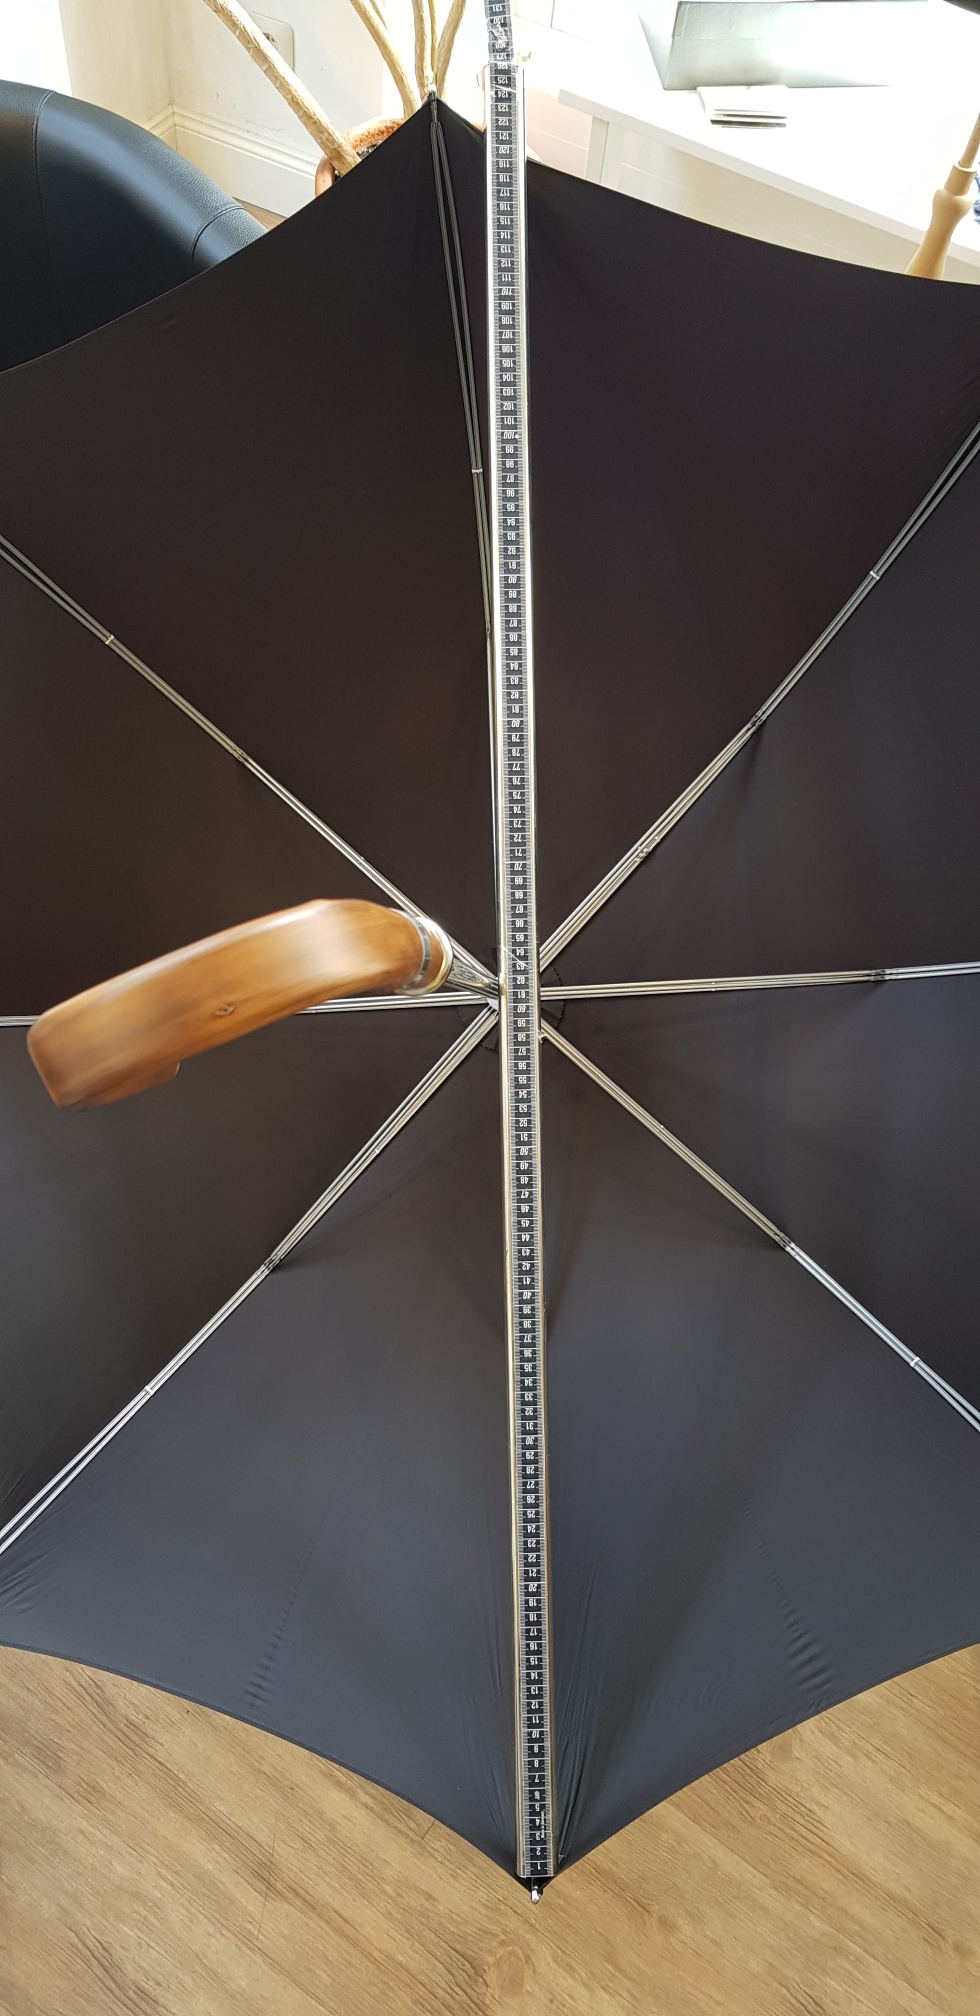 Regenschirme von Brigg: Durchmesser 125cm mit Doppelstreben